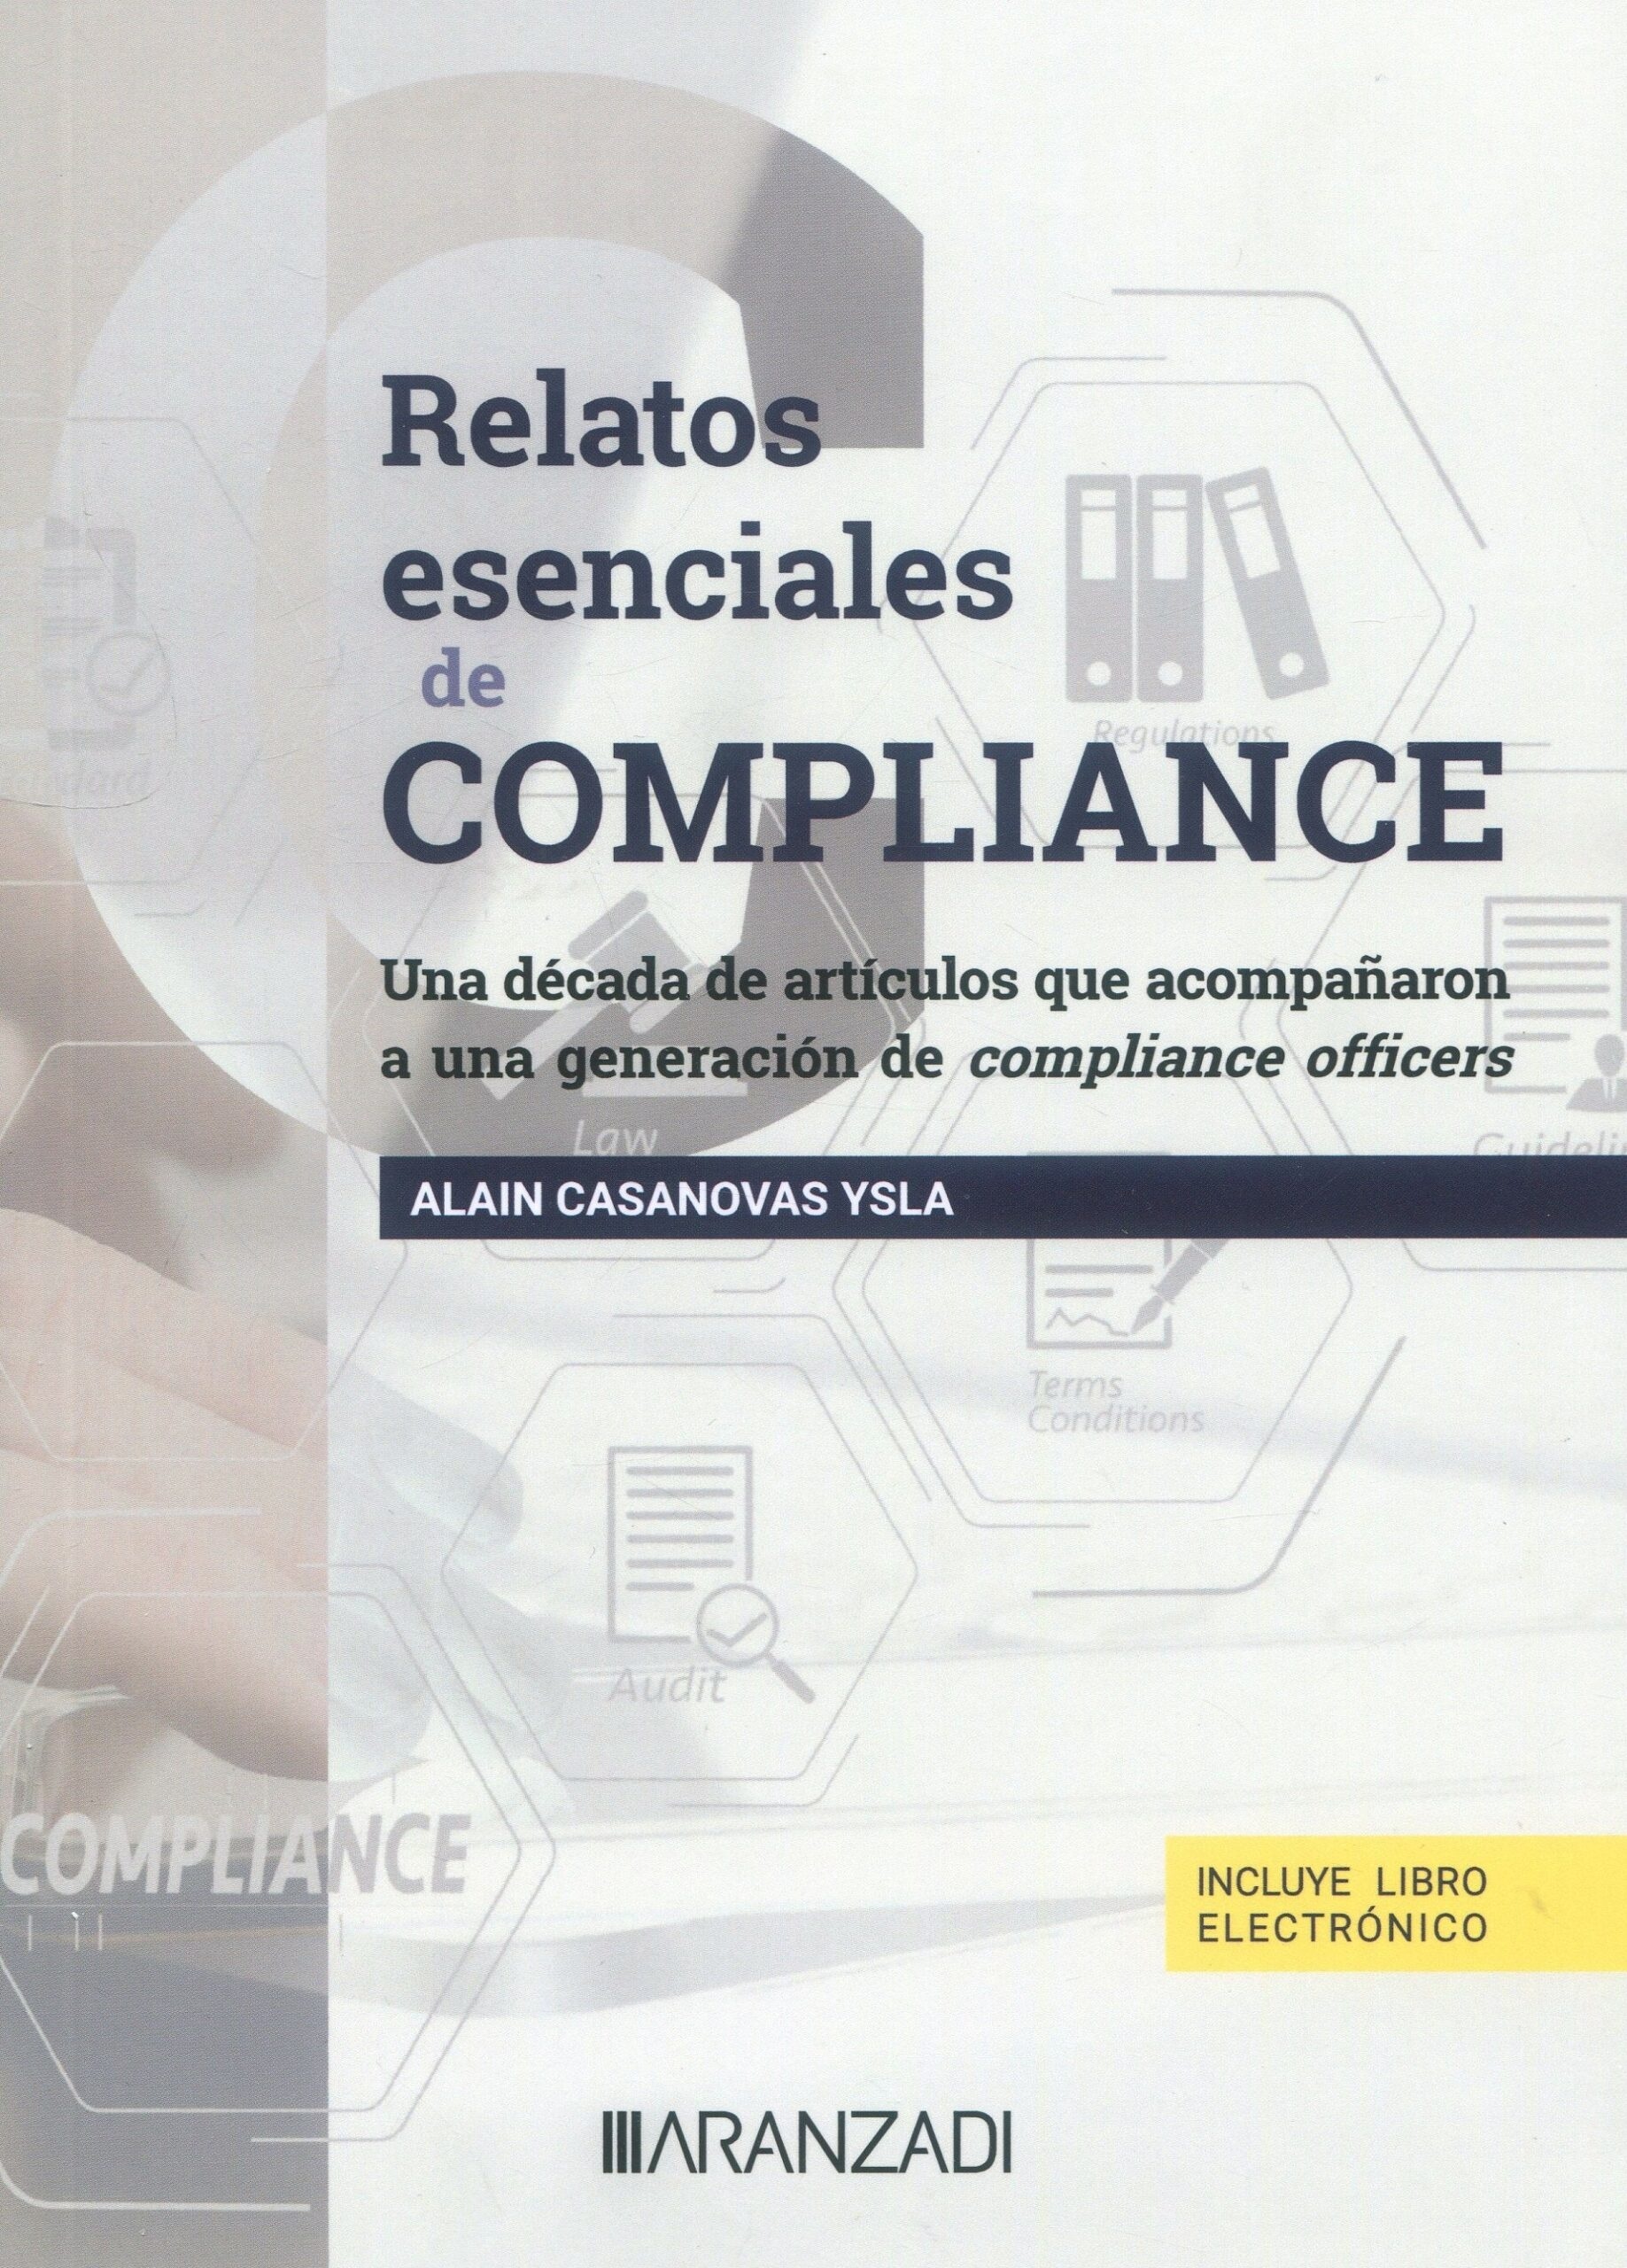 Relatos esenciales de compliance. Una década de artículos que acompañaron a una generación de compliance officer